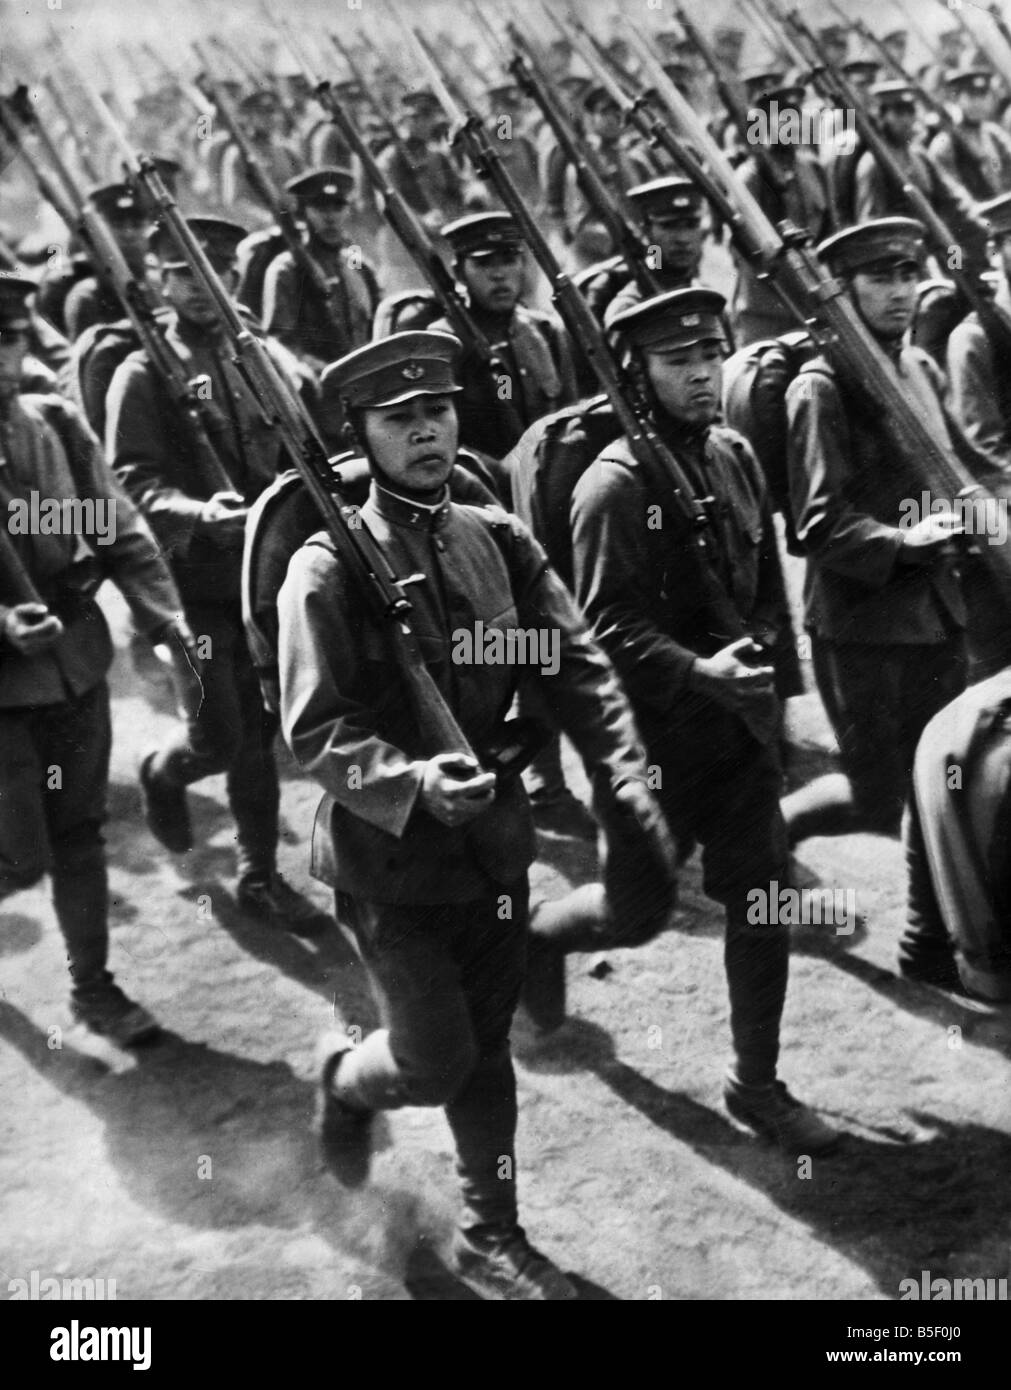 Ejército japonés continúa adelantado en Malaya con fuertes pérdidas. OPS: el desfile de la Guardia Imperial japonesa en el Yoyogi desfile planta en Tokio para el cumpleaños del emperador Hirohito en 1941.;29 de abril de 1941. Foto de stock